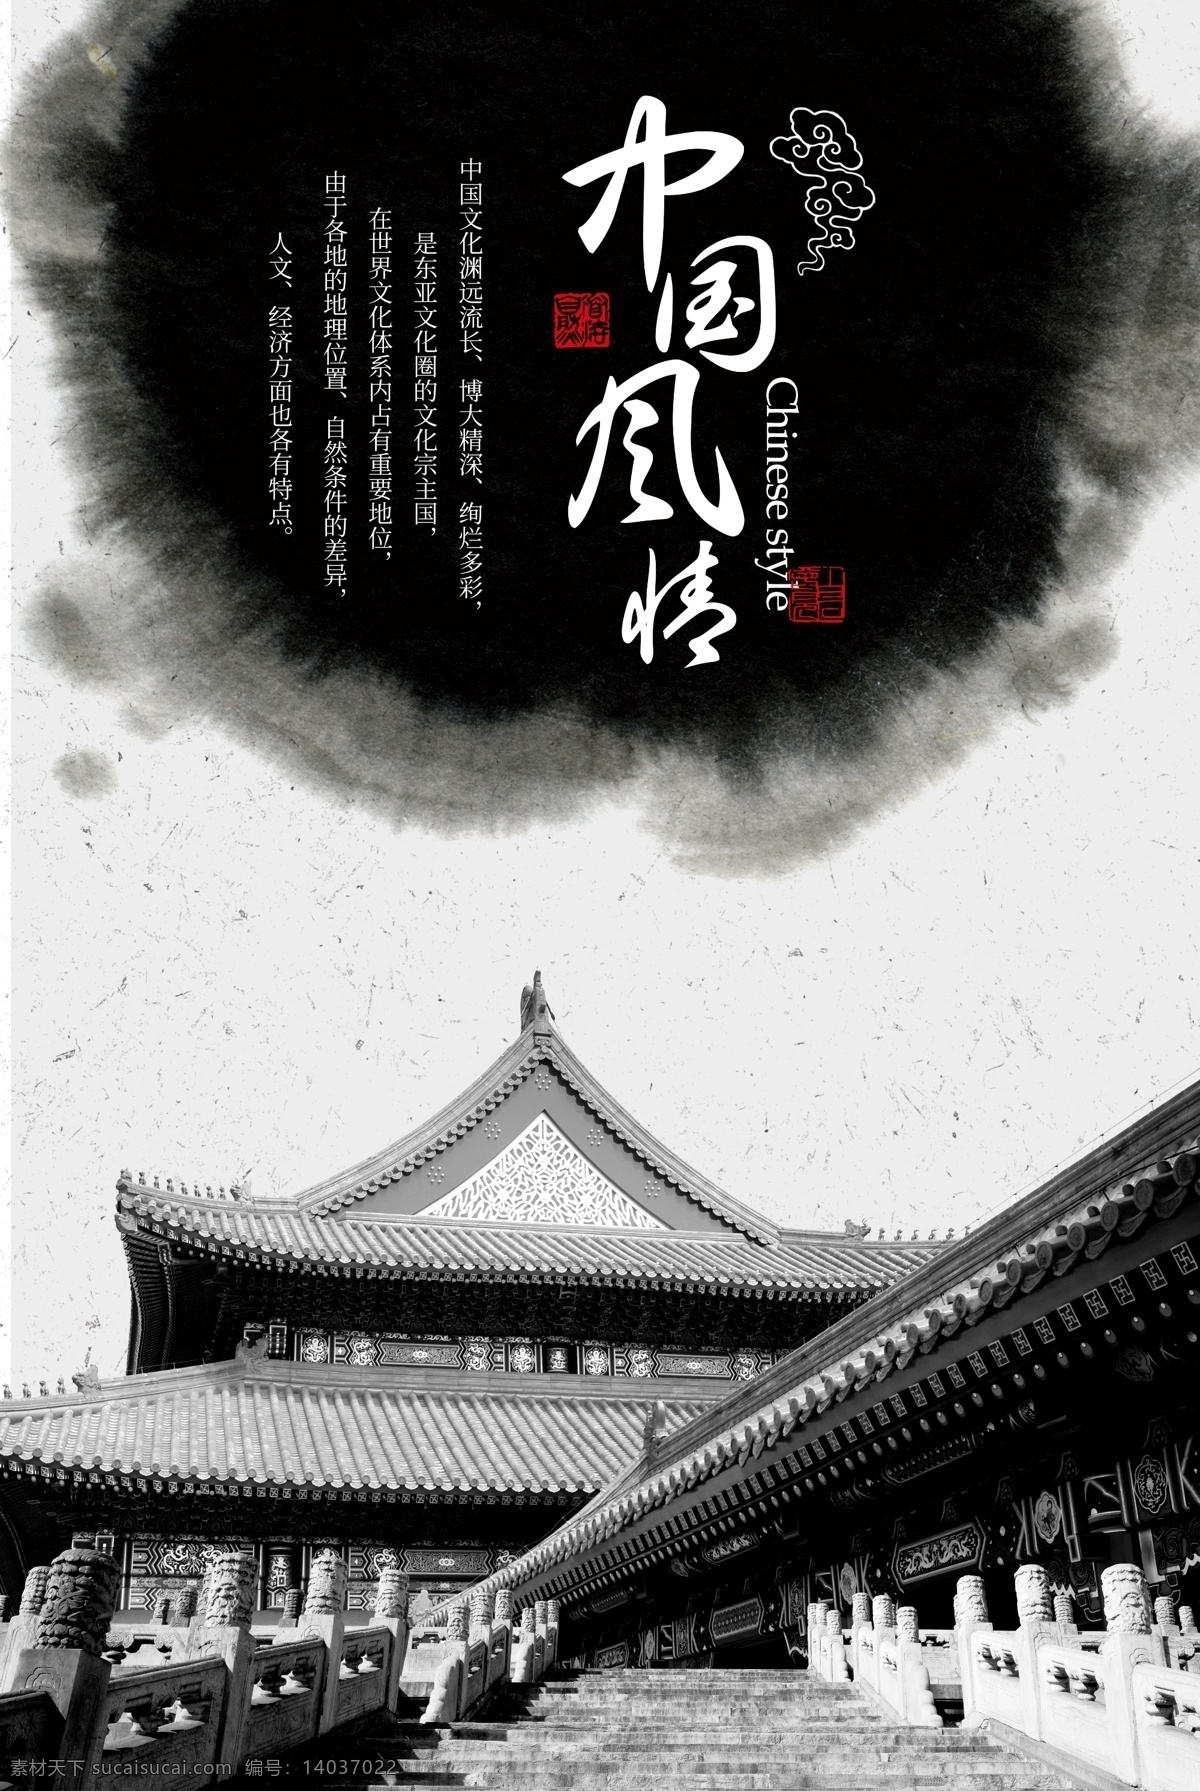 中国风海报 紫禁城 古建筑 中国风 墨迹 中国风情 古朴 传统